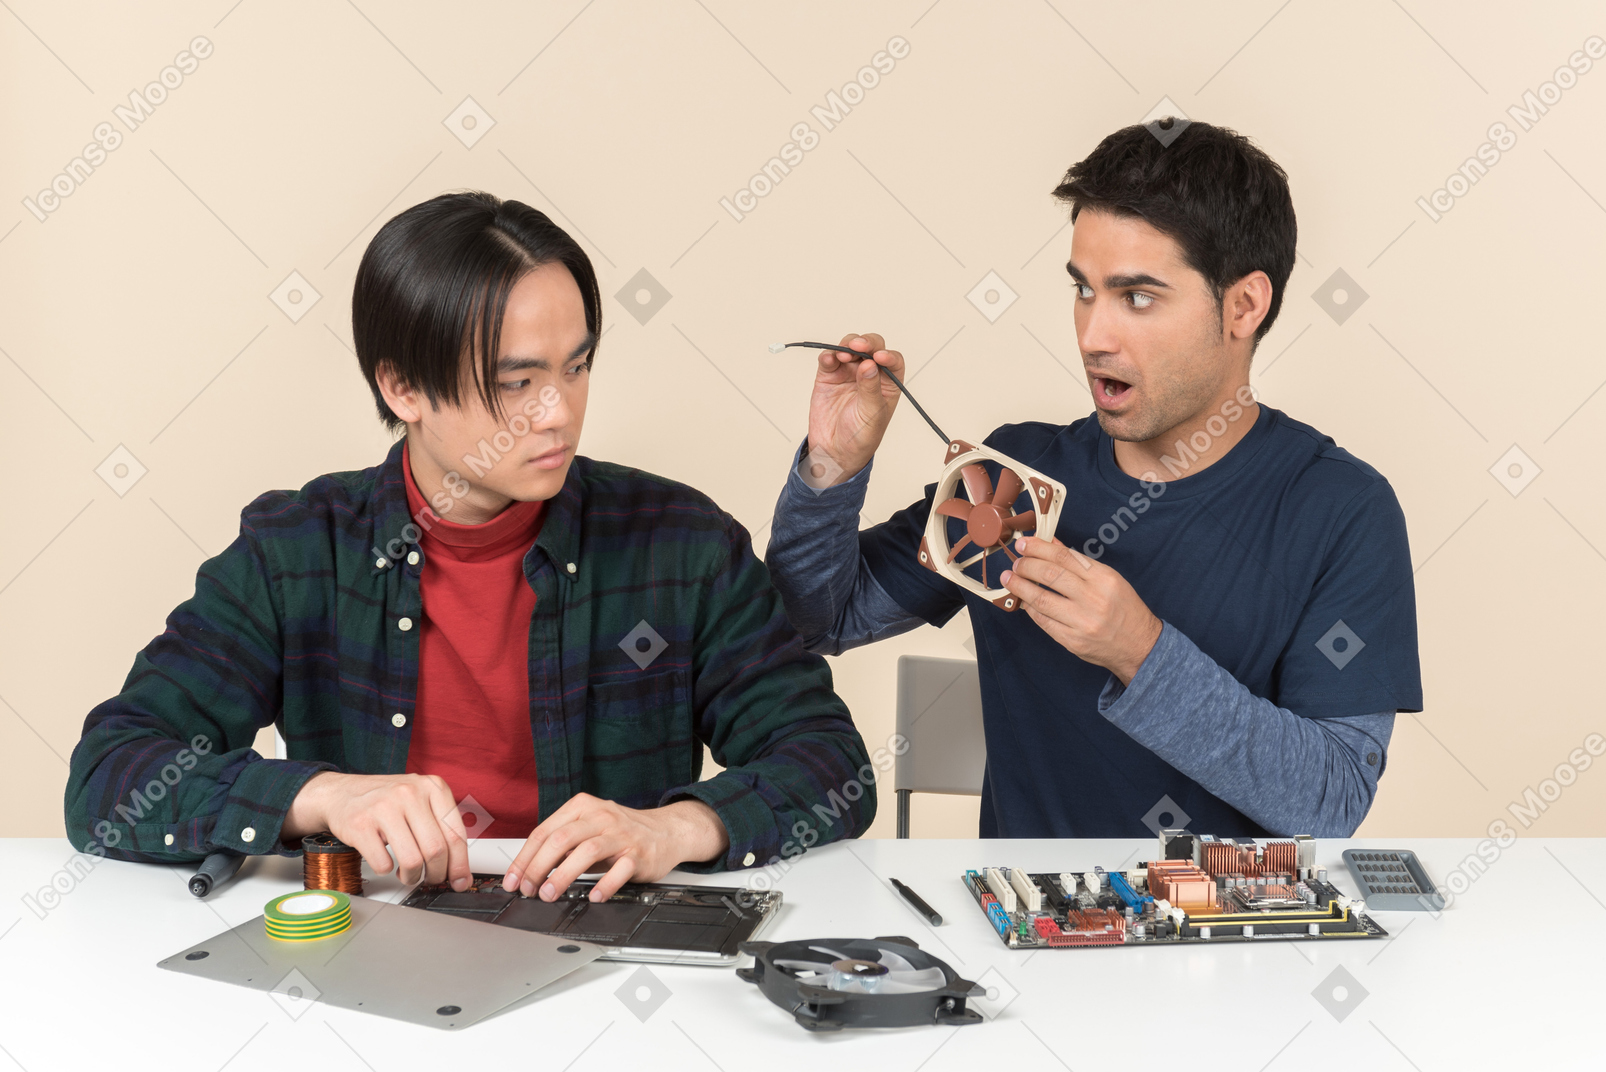 Dois jovens geeks sentado à mesa com detalhes sobre ele e um deles olhando surpreso